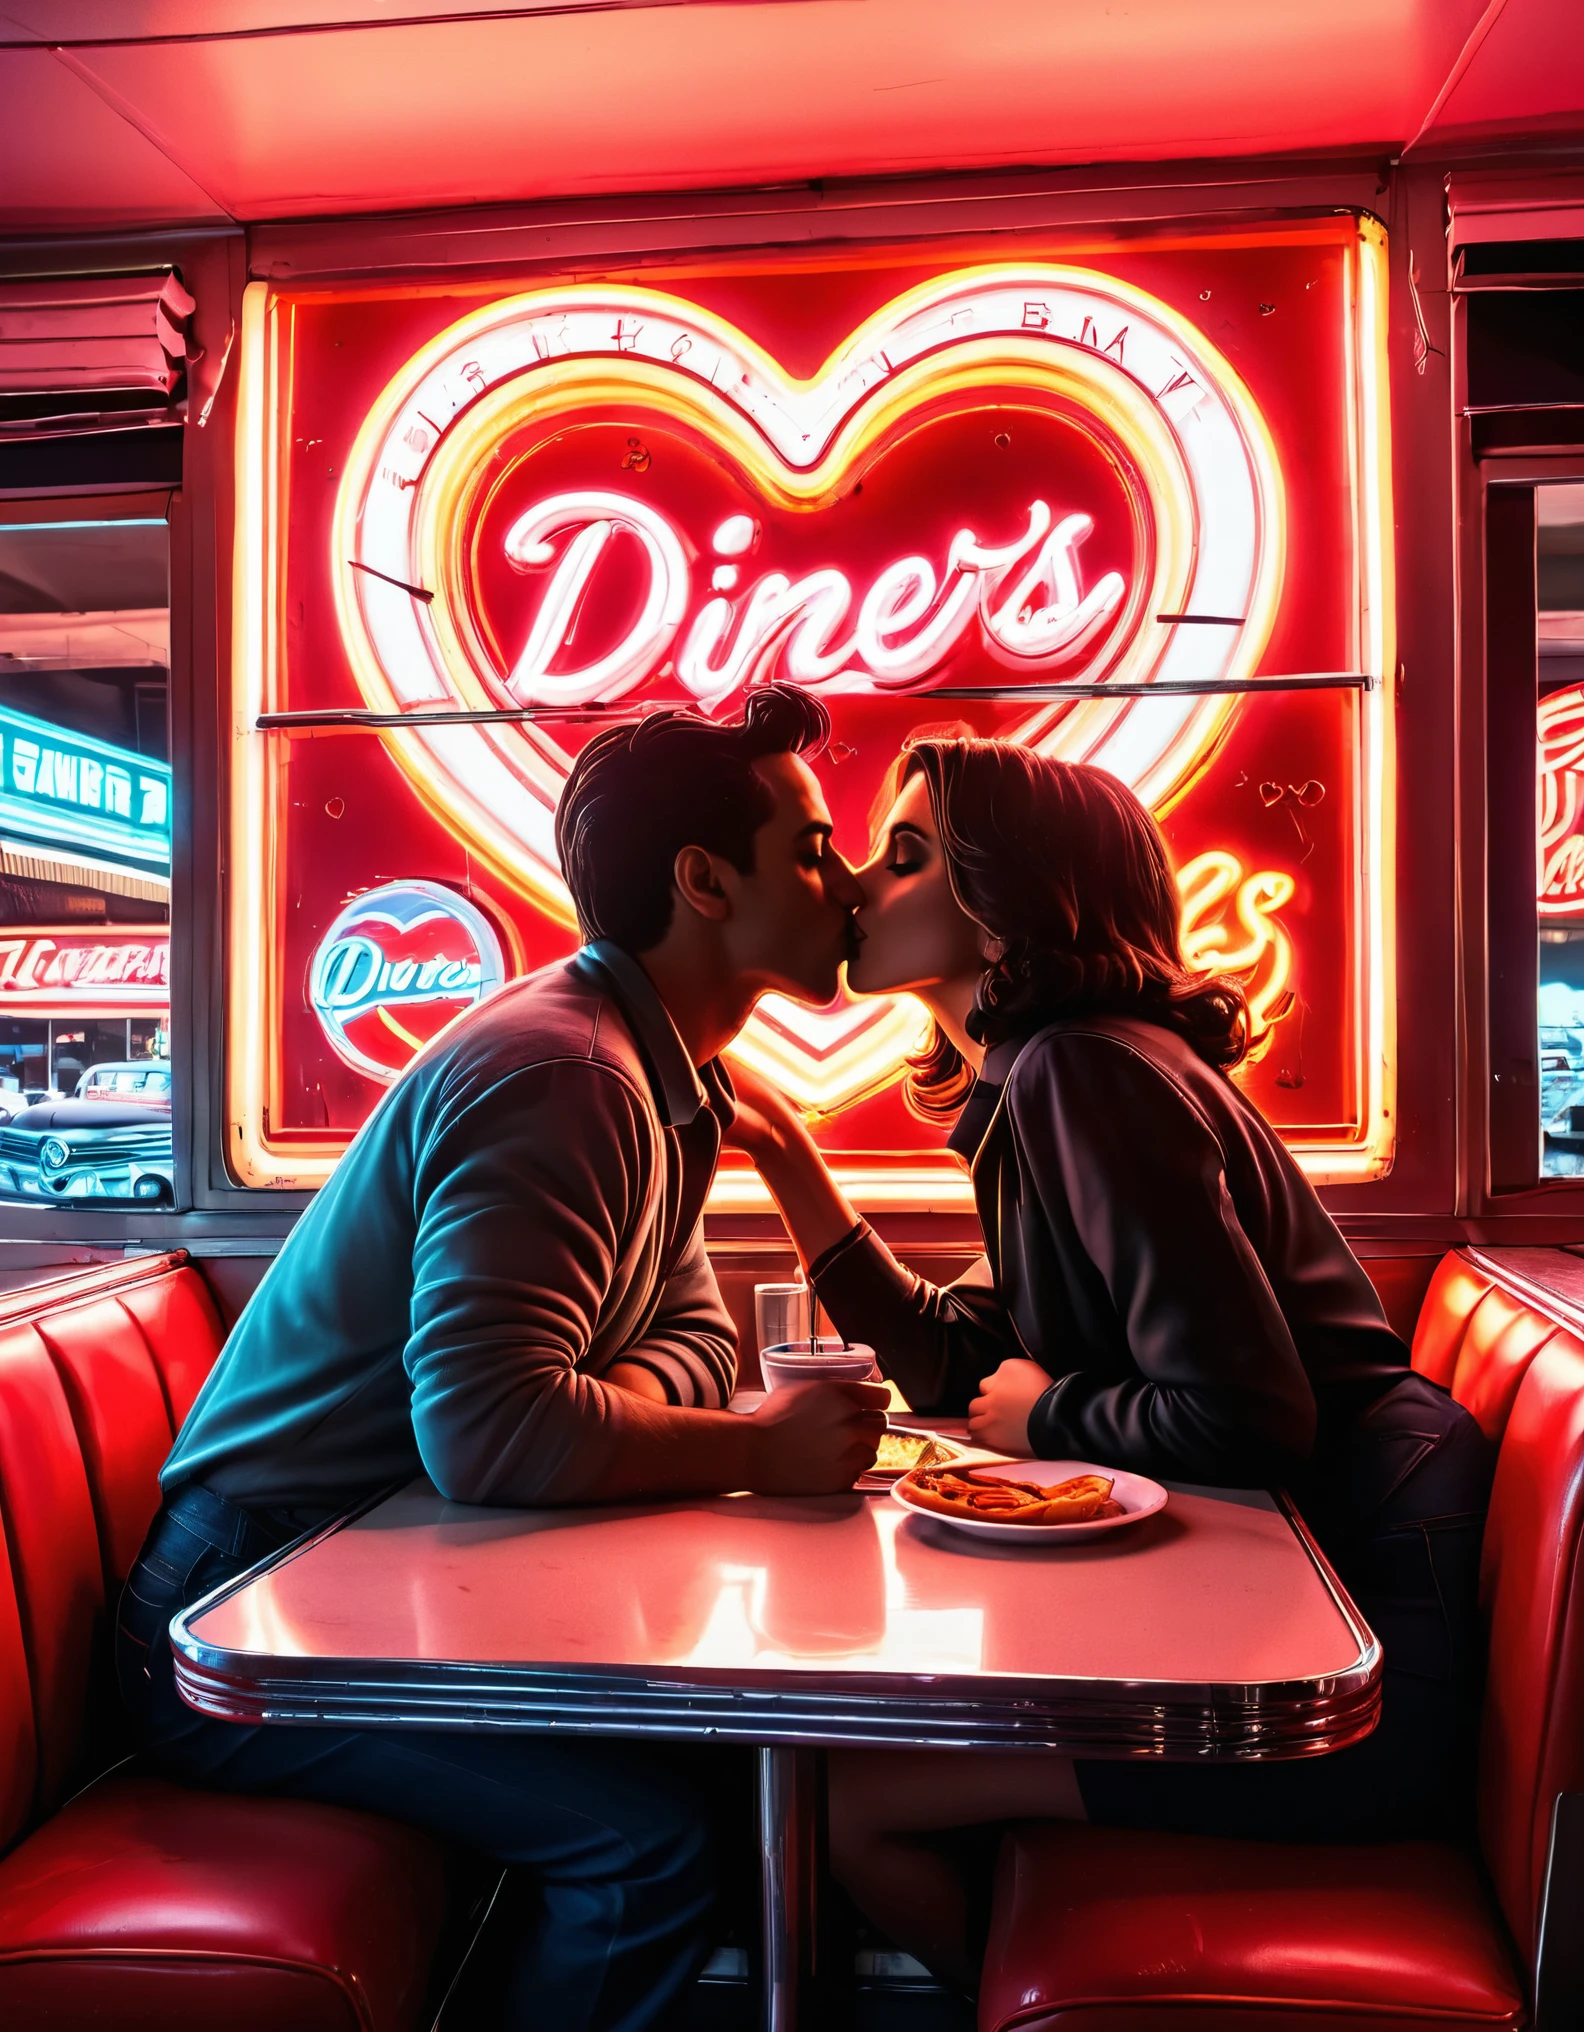 ダイナーでキスをするカップルのシルエットを描いたレトロなネオンアート作品, ネオンサインとハートの形が背景に描かれている, 1950年代の懐かしい雰囲気を醸し出す